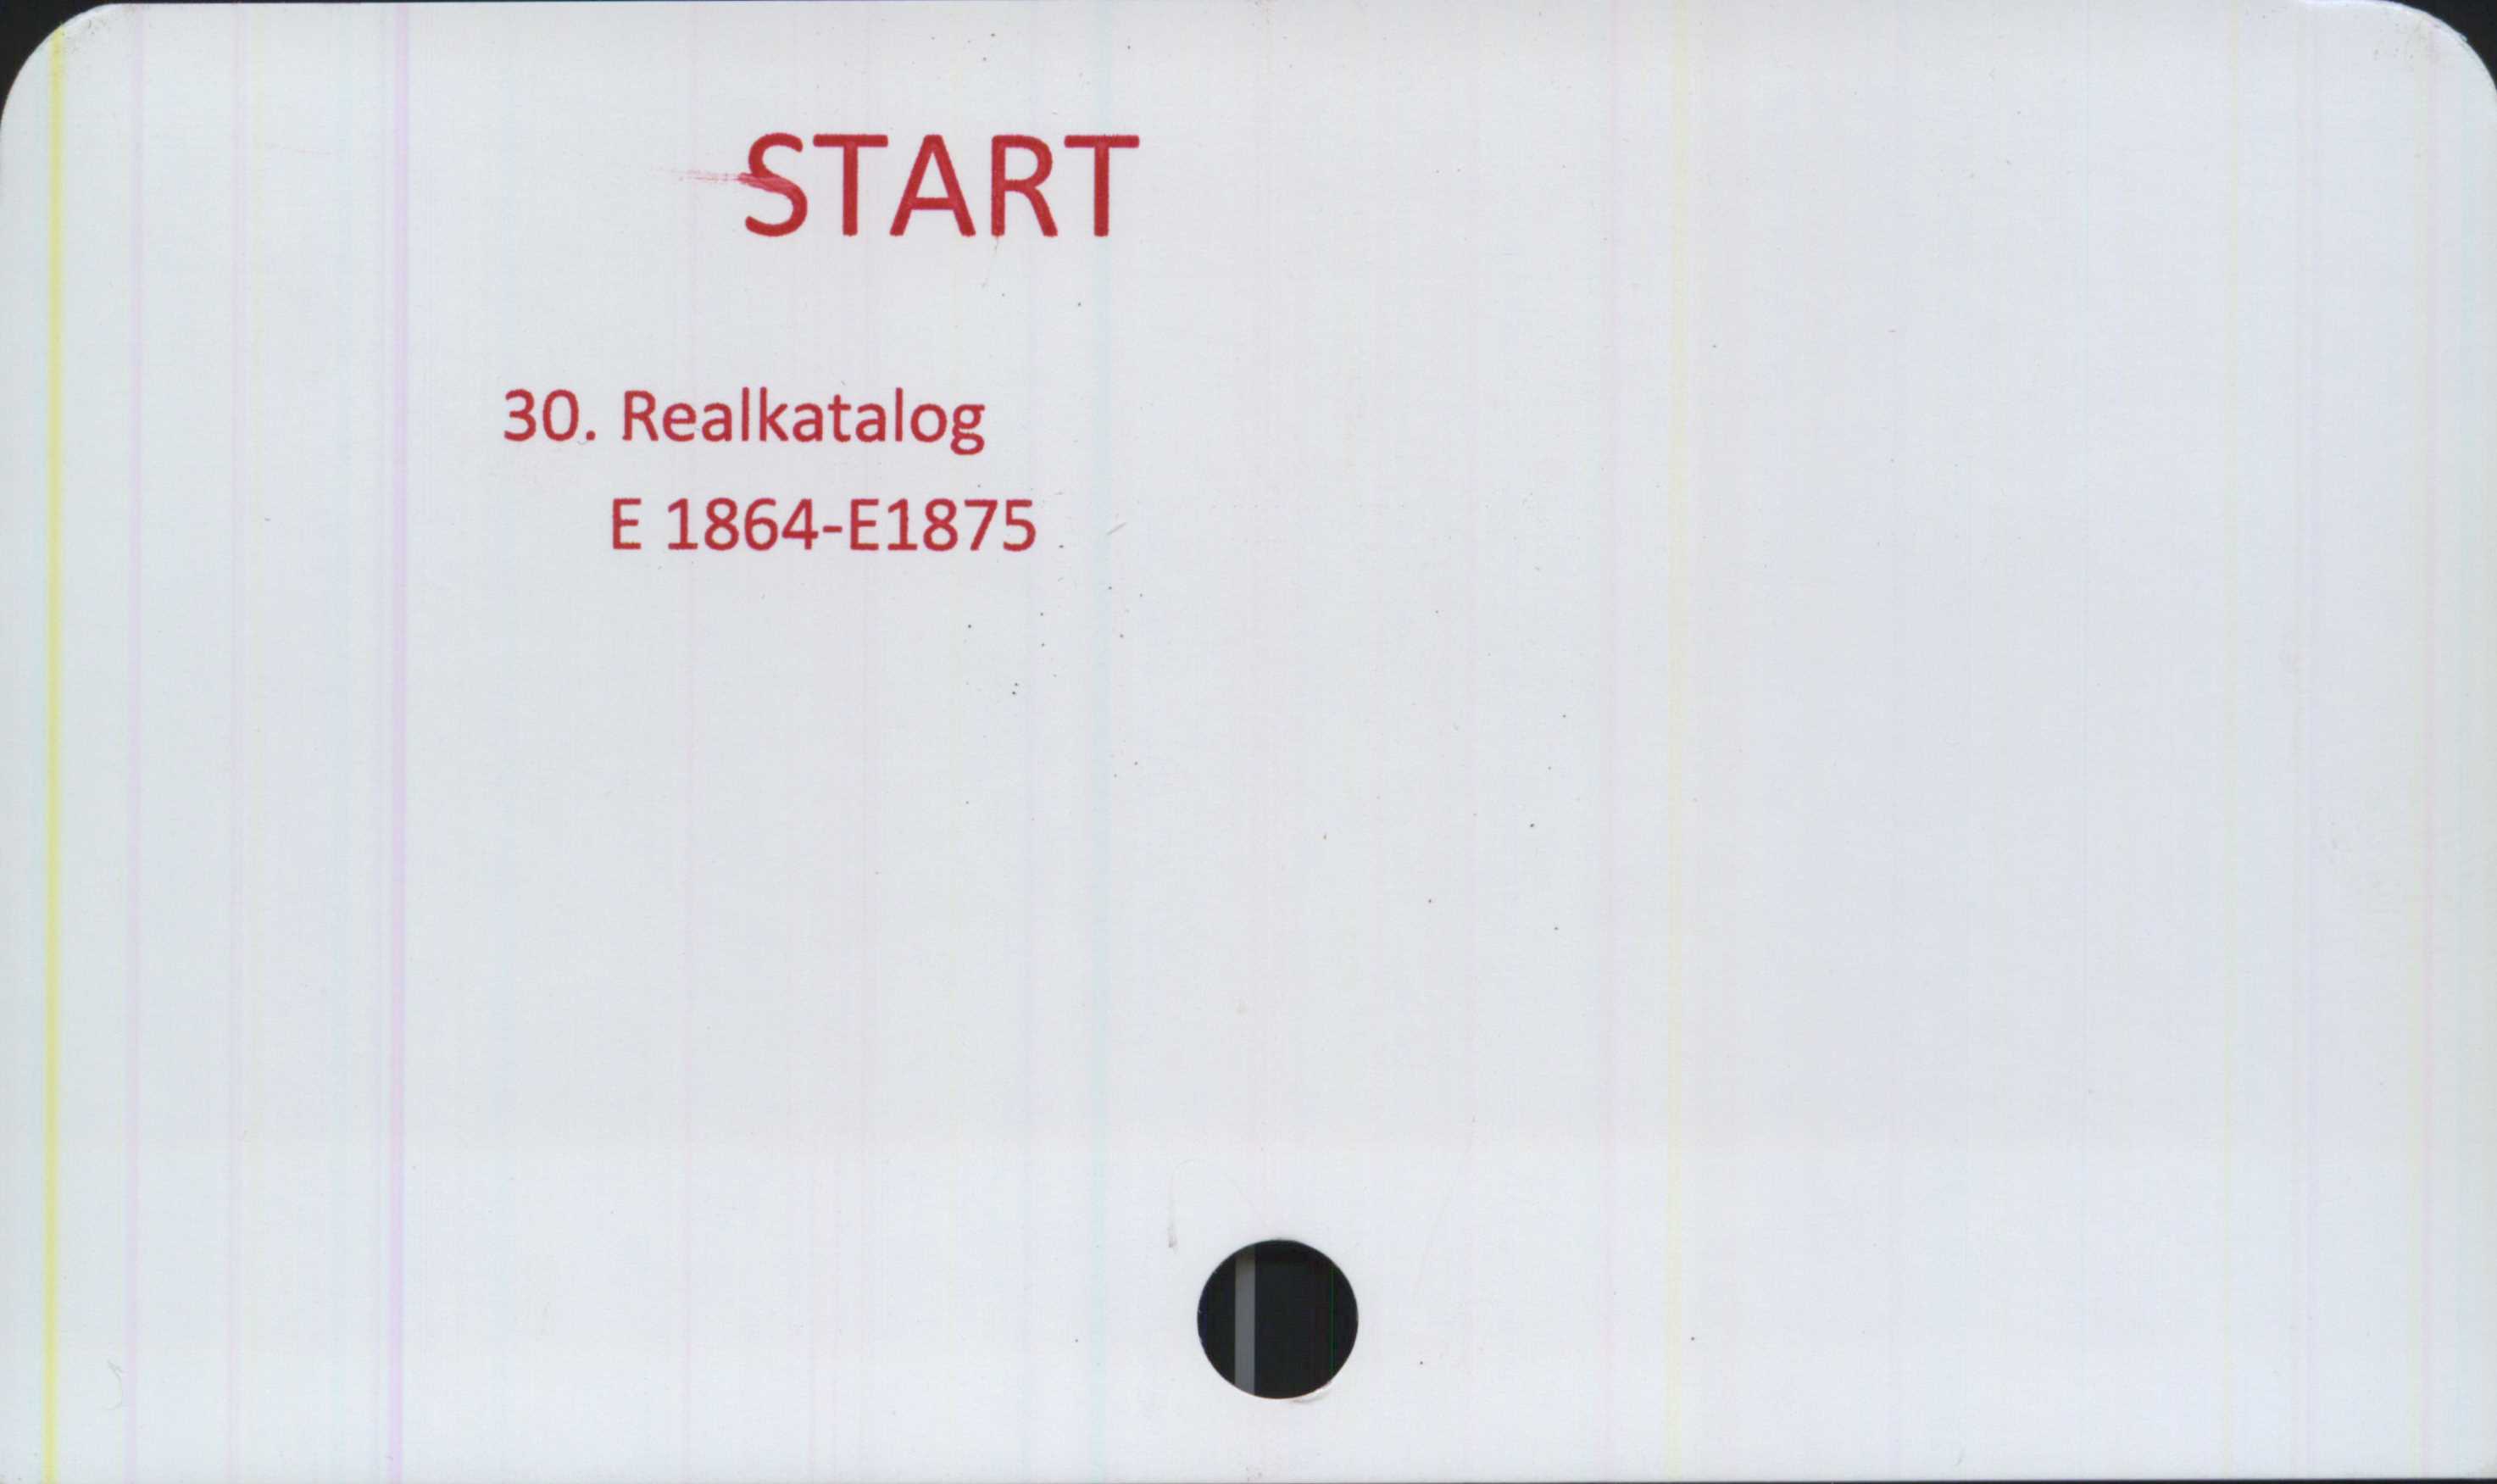  ﻿START

30. Realkatalog
E1864-E1875